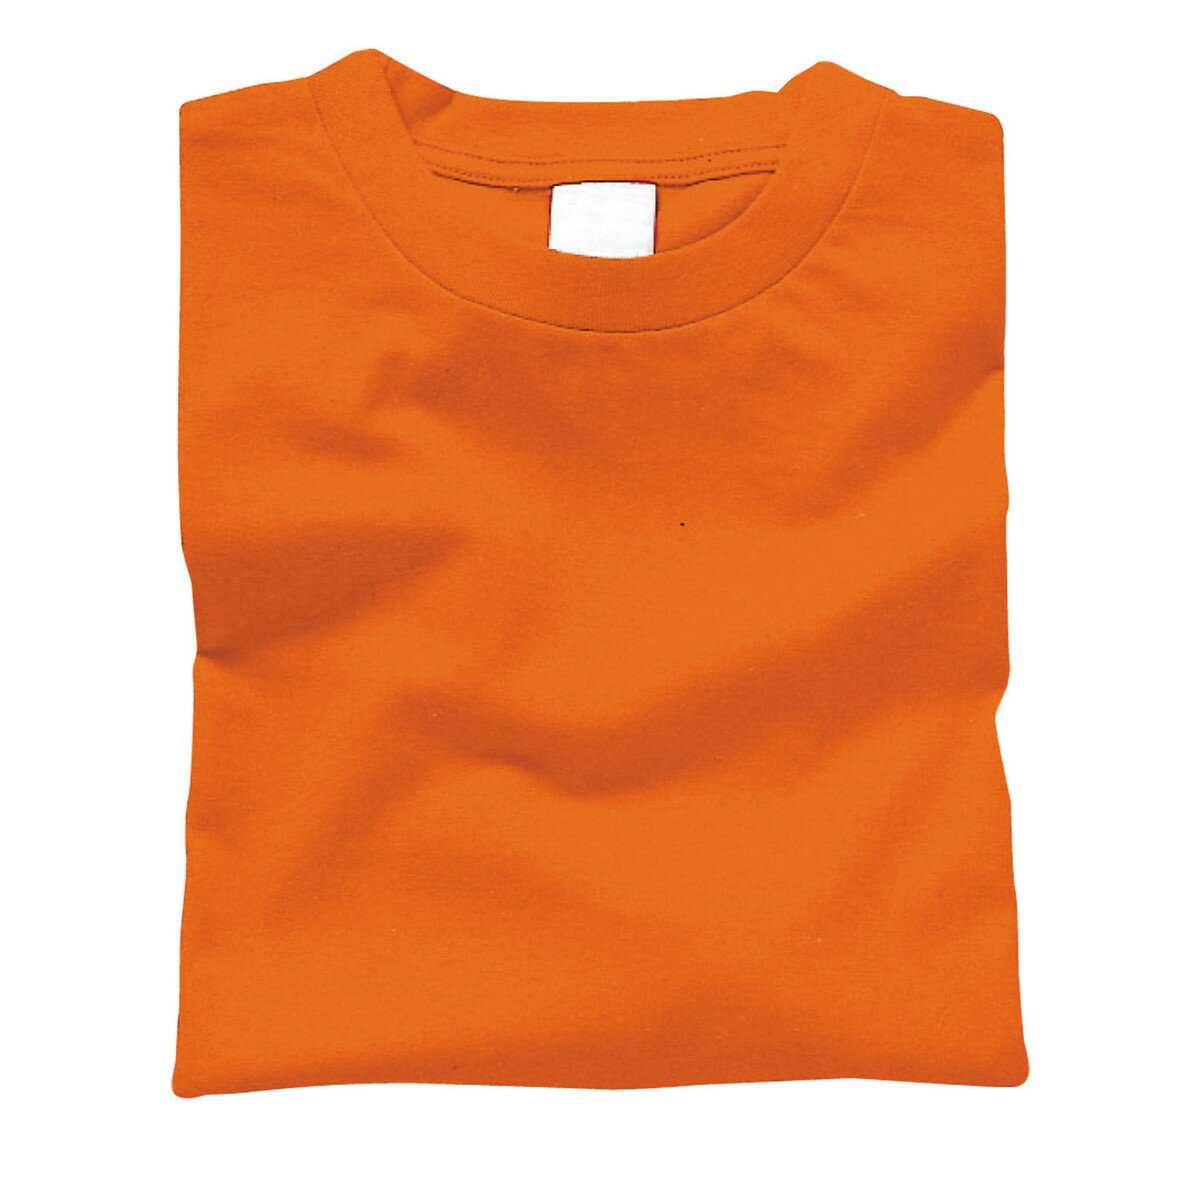 Artec(アーテック) カラーTシャツ M 015 オレンジ #38715 1